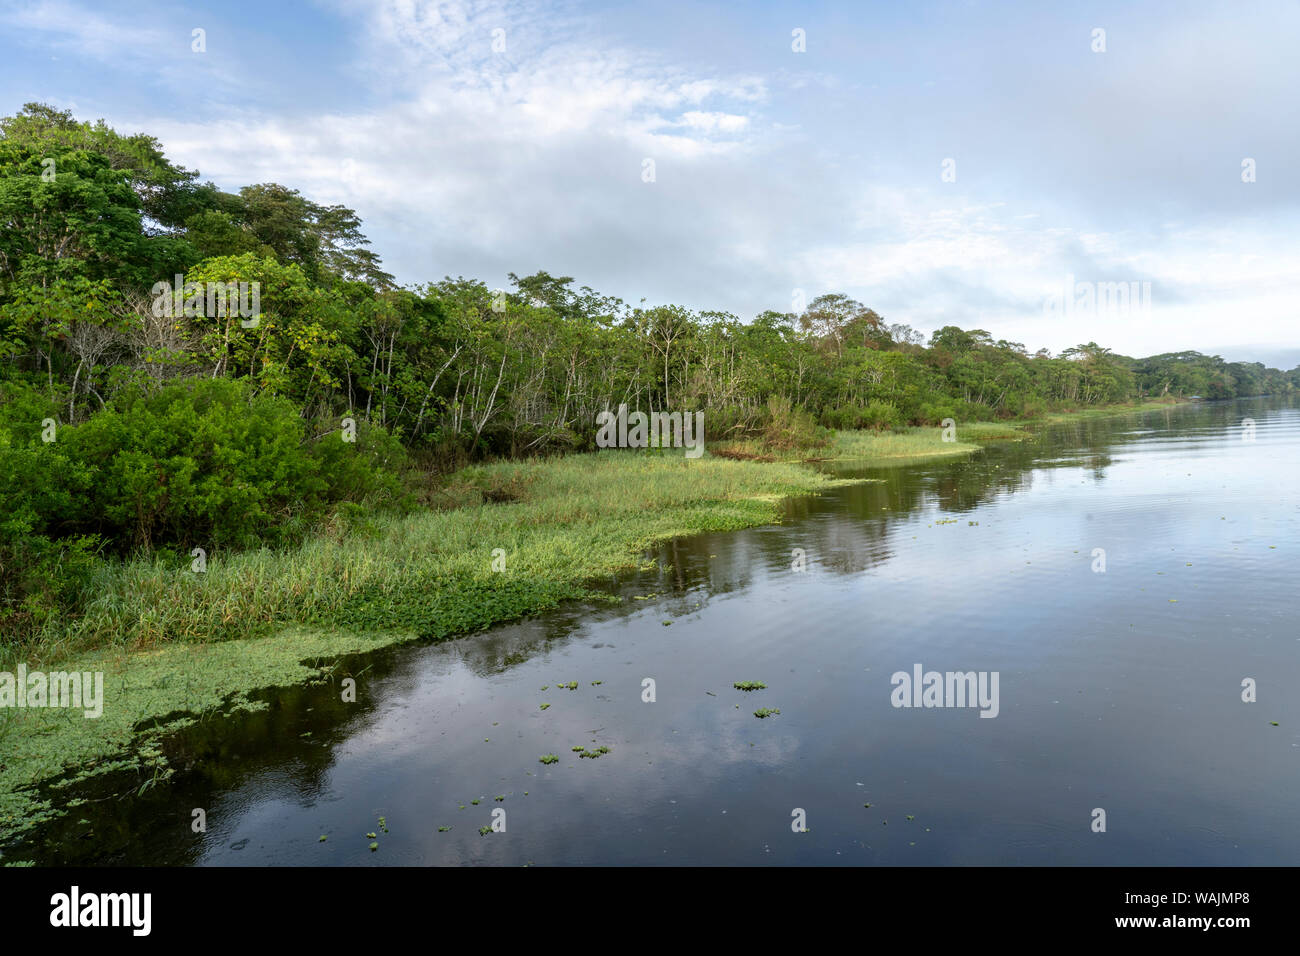 Amazon Nationalpark, Peru. Maranon Fluß Regenwald Landschaft, mit dem Ufer  mit invasiver Wasser Salat gefüttert Stockfotografie - Alamy